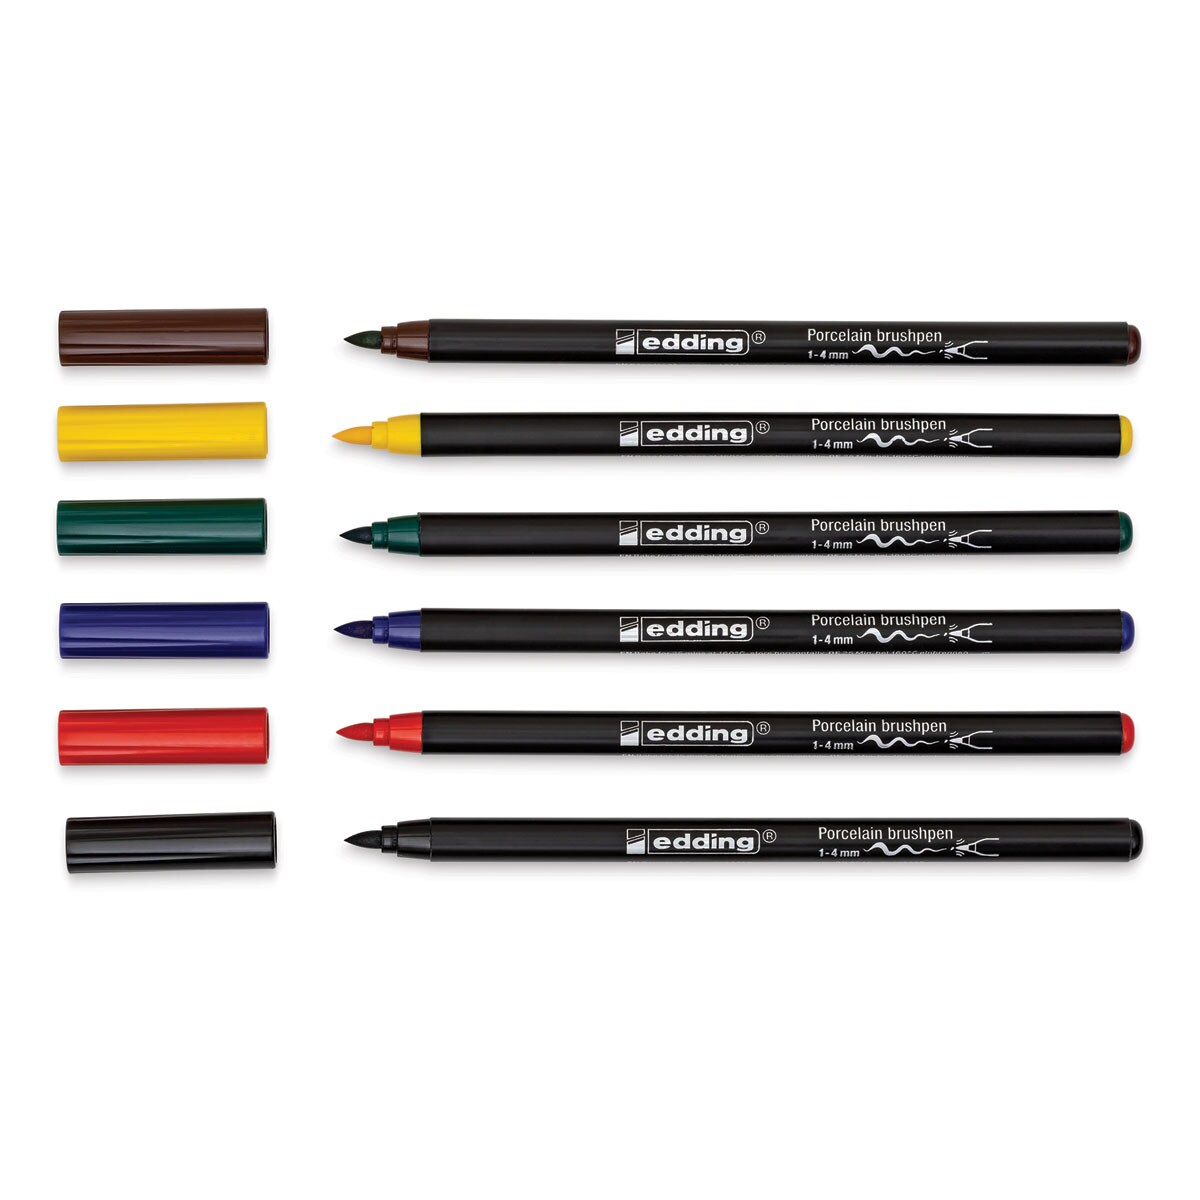 Edding 4200 Series Porcelain Brush Pens - Set of 6, Family